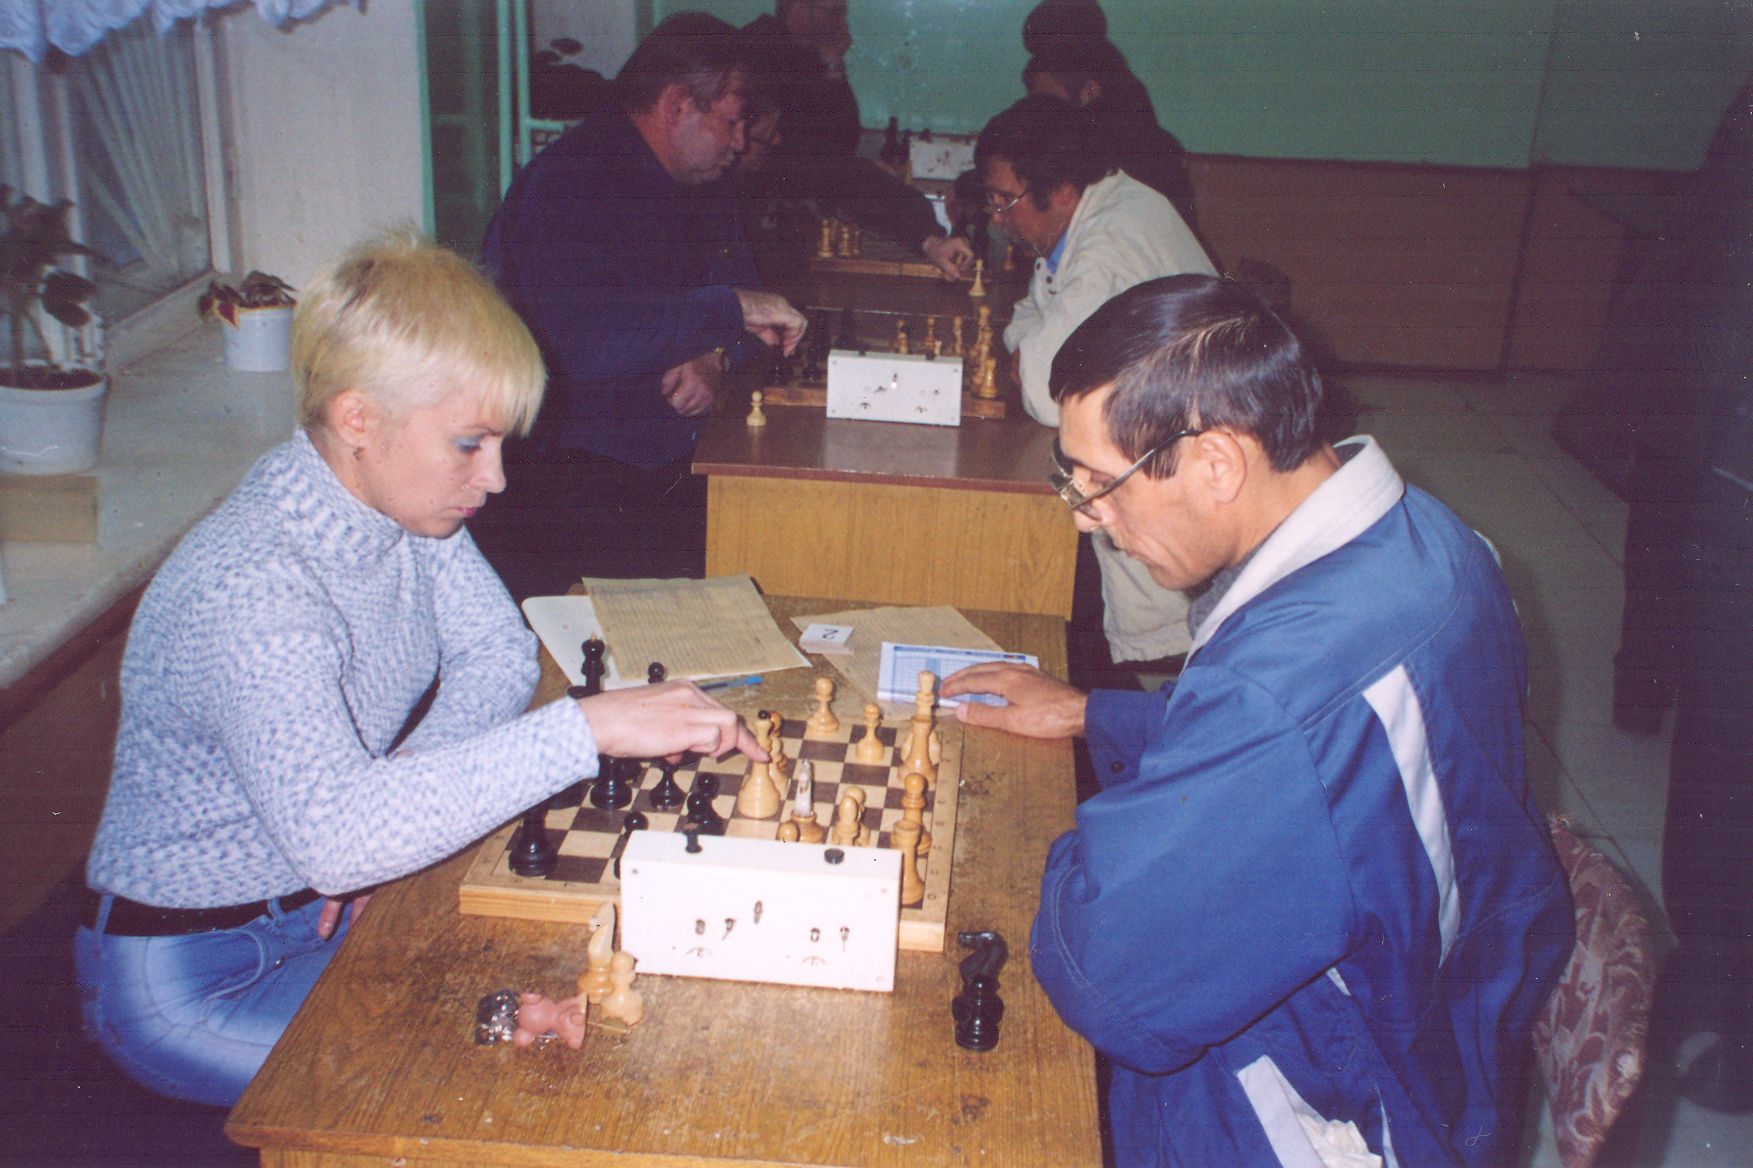 Бугульминка Ольга Турдиева прекрасный наставник и титулованная шахматистка, неравнодушный, отзывчивый человек